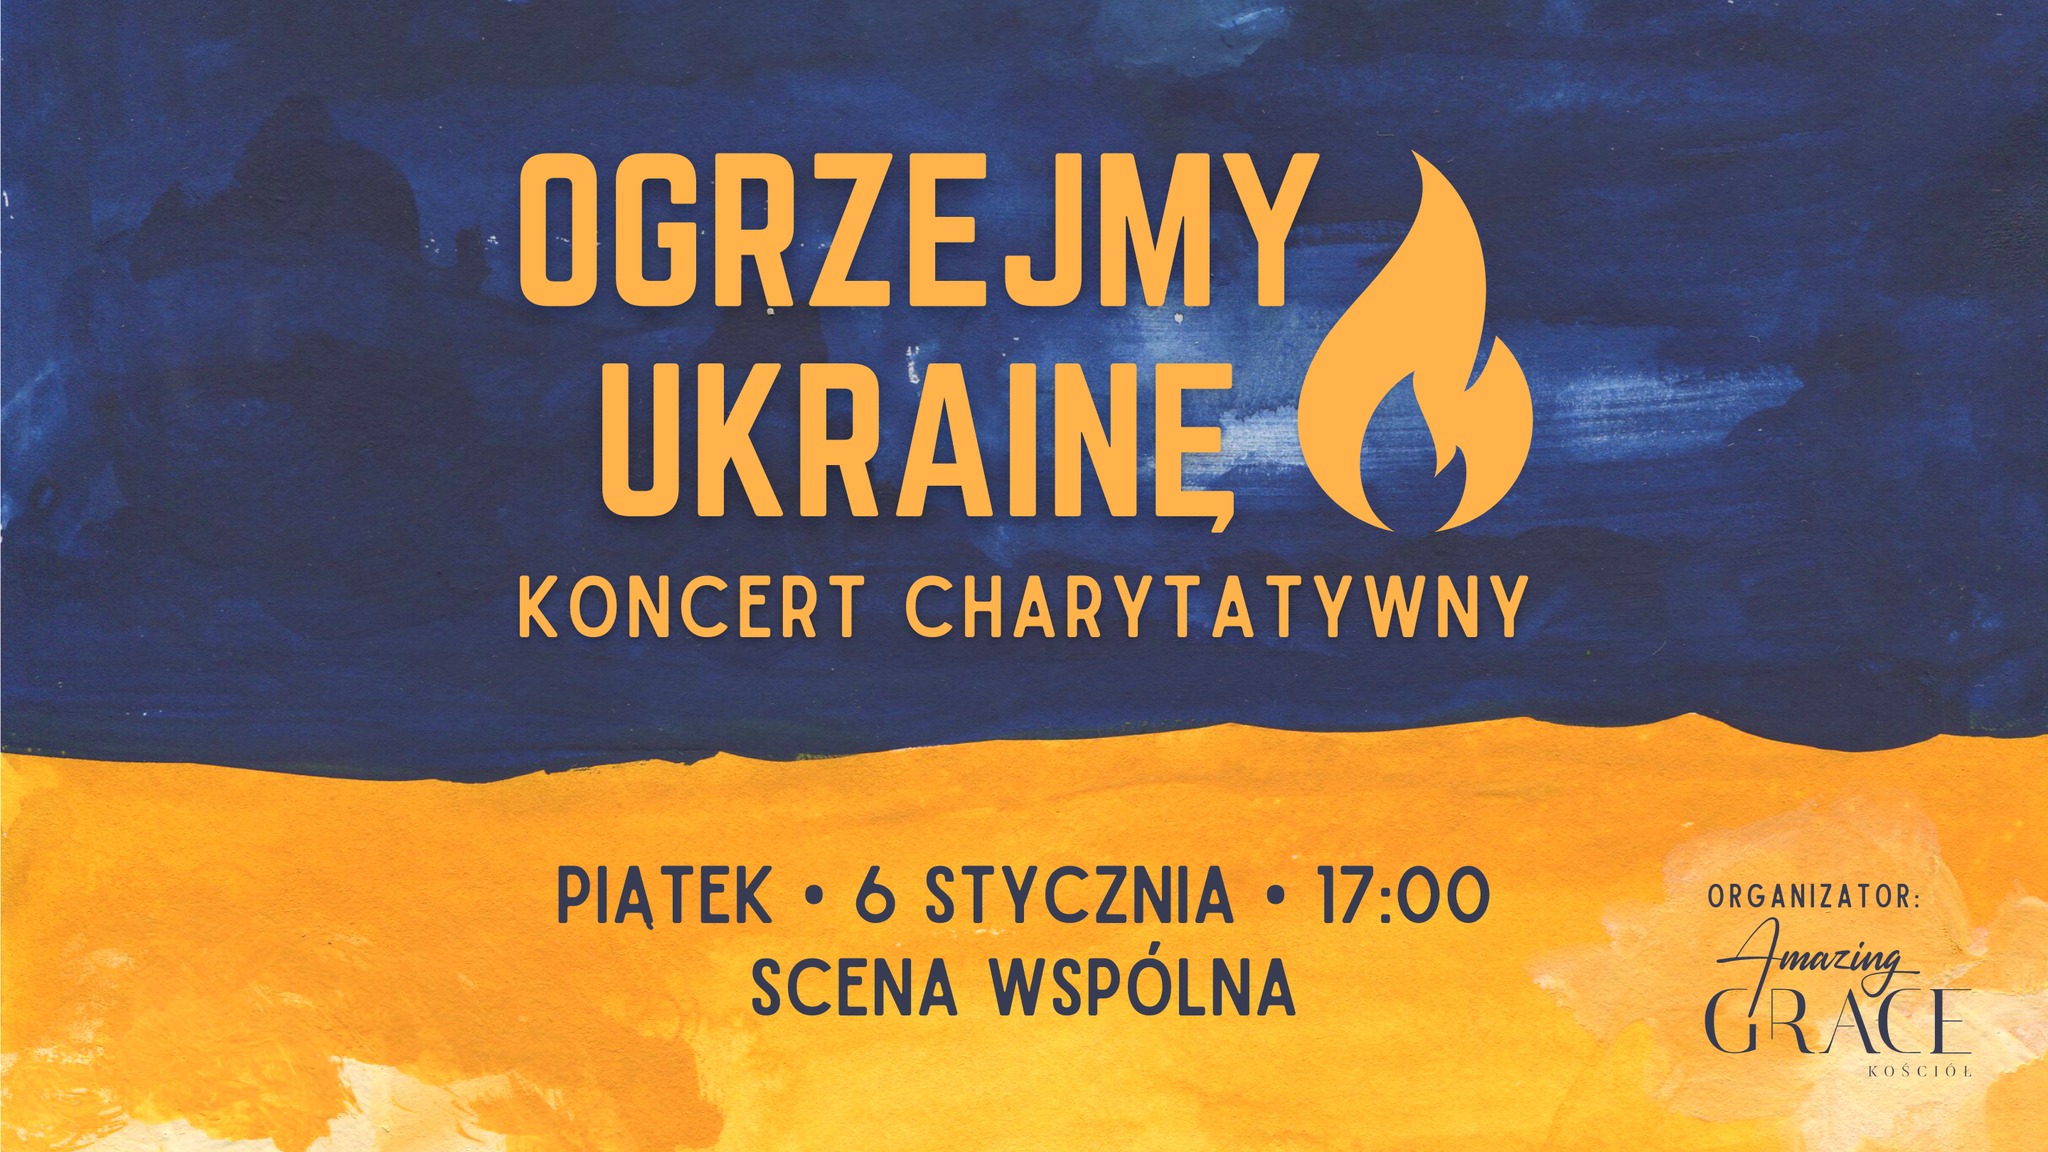 Koncert "Ogrzejmy Ukrainę" - Organizator